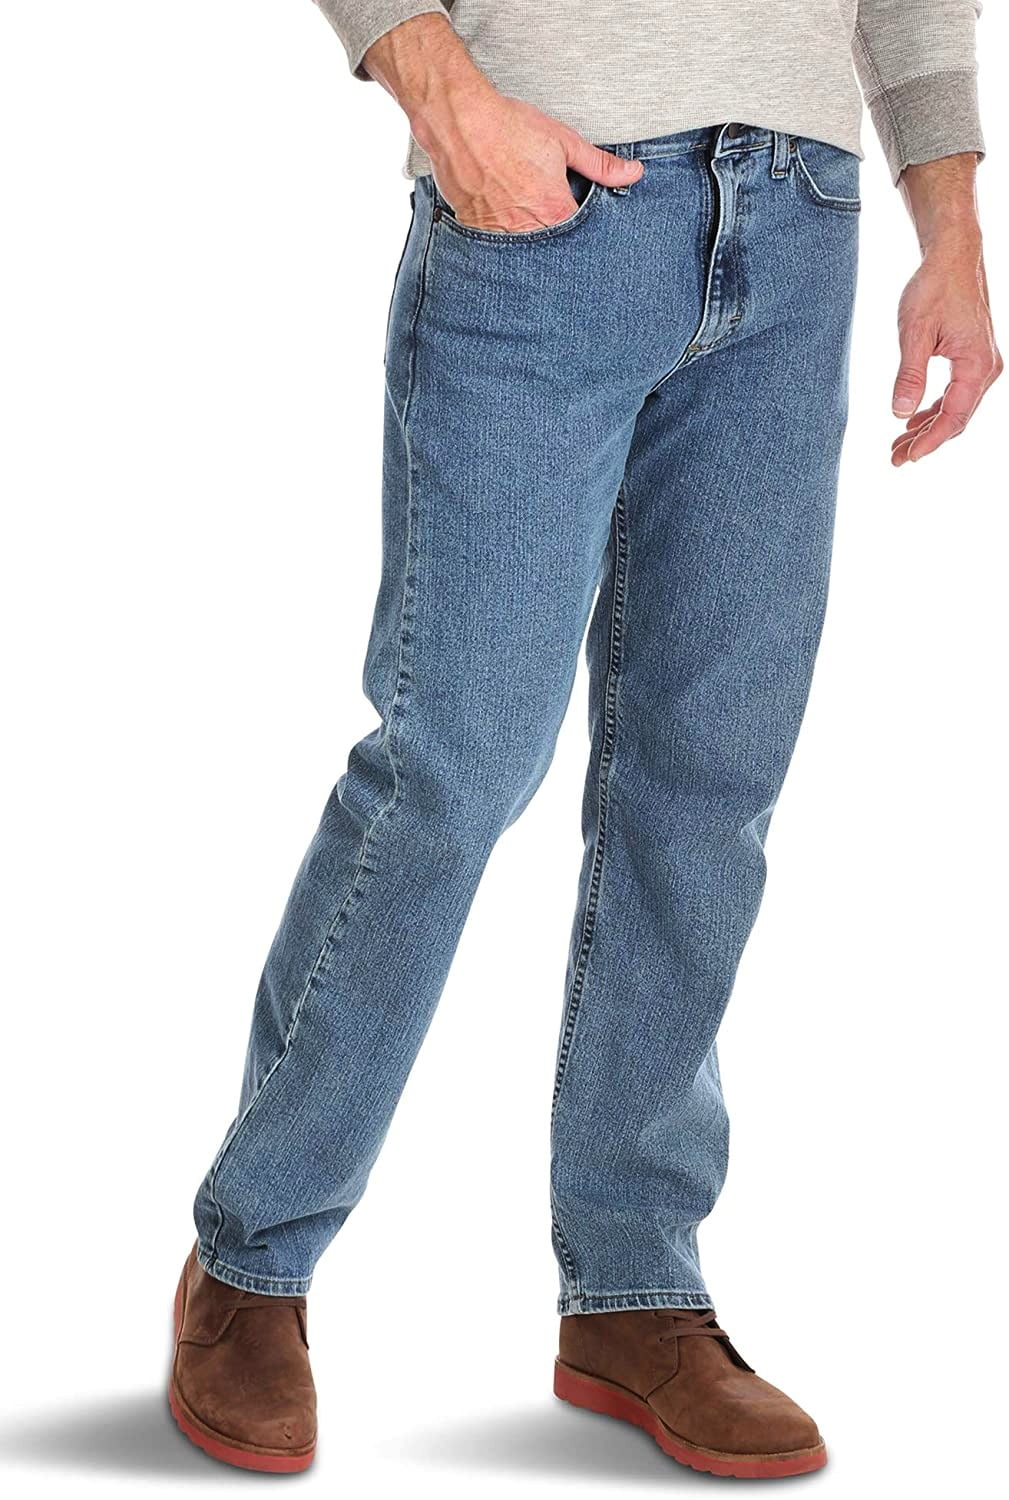 Wrangler Mens Jeans Deep 46X32 Relaxed Fit Flex-Waistband - Walmart.com